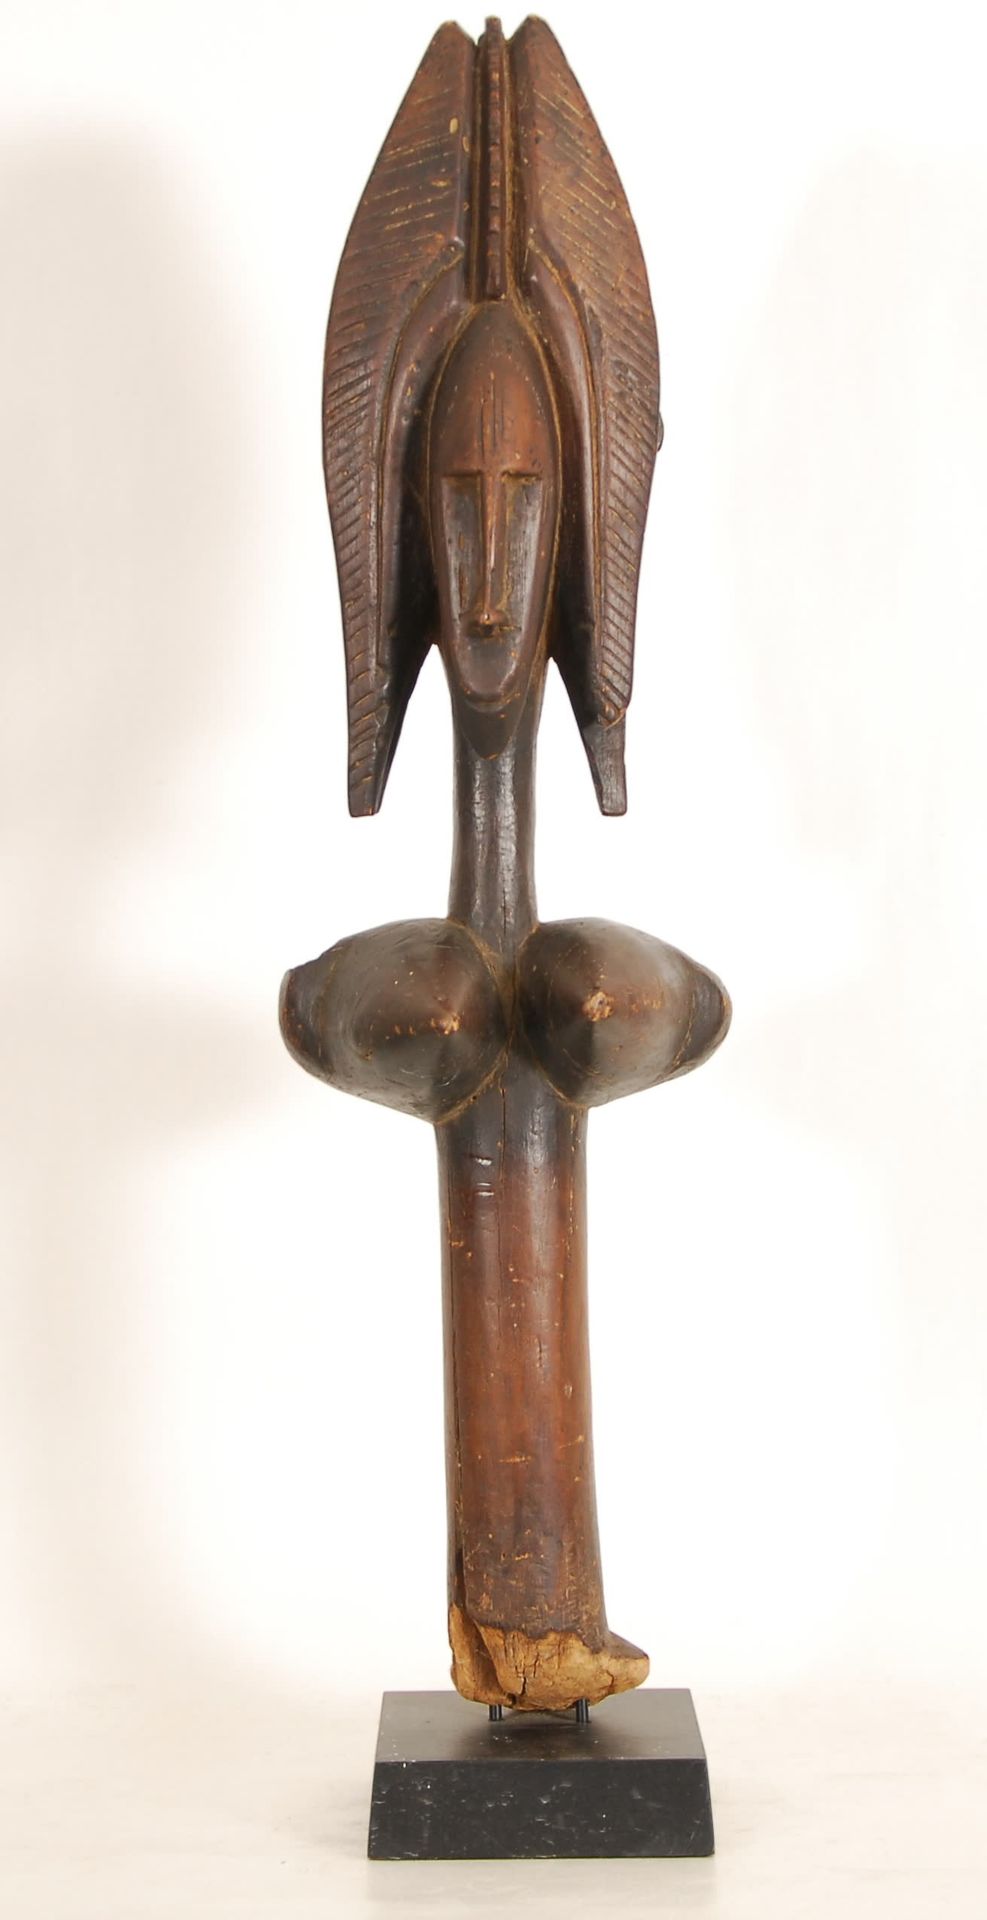 Afrique - Africa Marionetta Bambara
Legno intagliato, Mali.
H. 82 cm.
Provenienz&hellip;